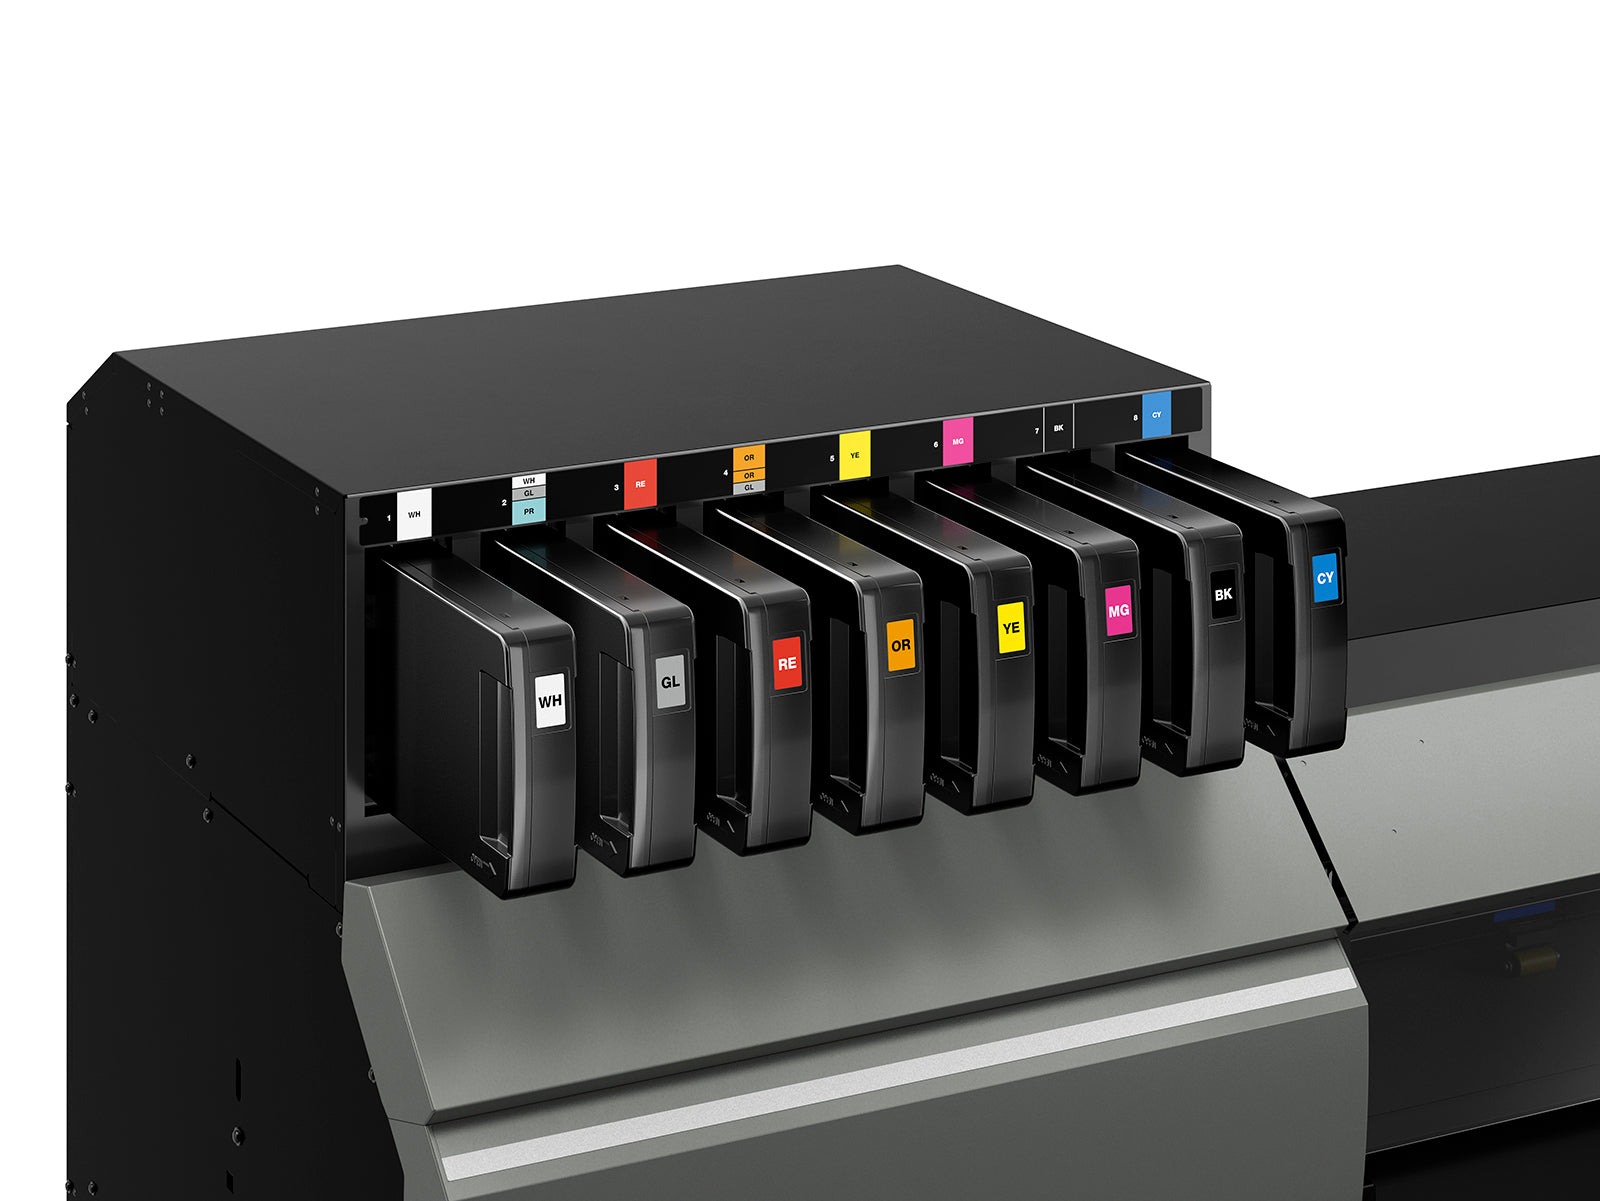 Roland TrueVIS LG-300 UV Printer/Cutter